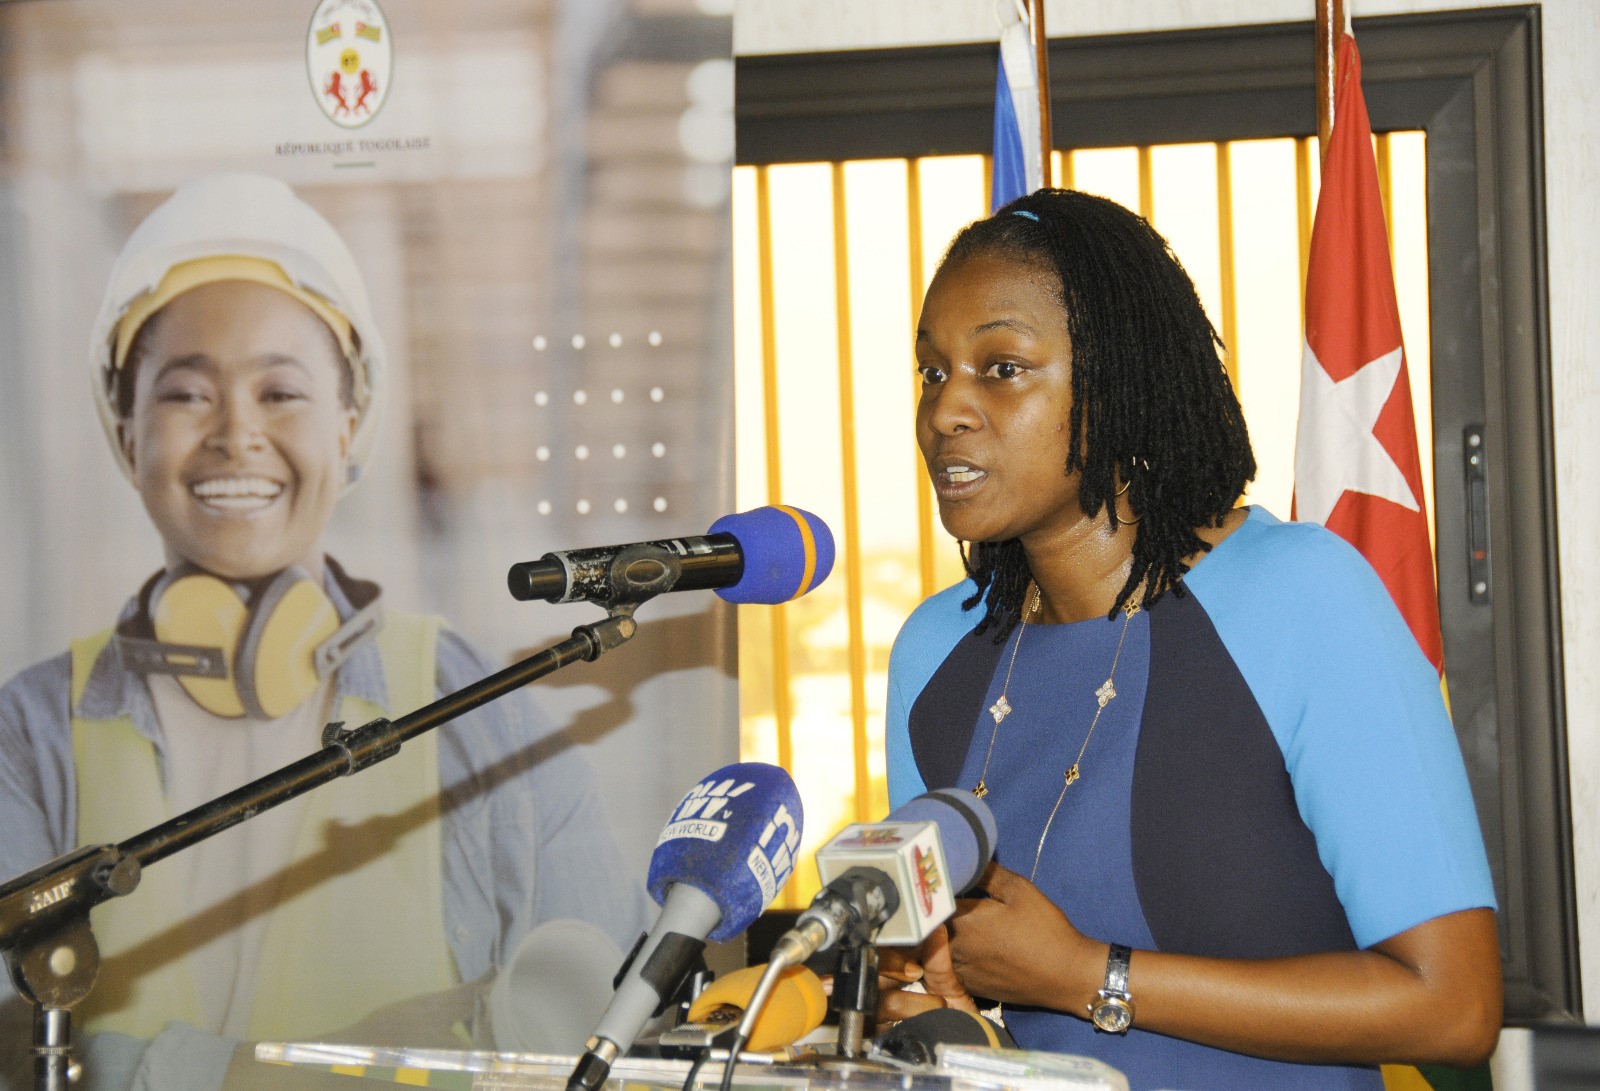 Le gouvernement et l’UE lancent conjointement l’initiative “Investir dans les jeunes entreprises au Togo”